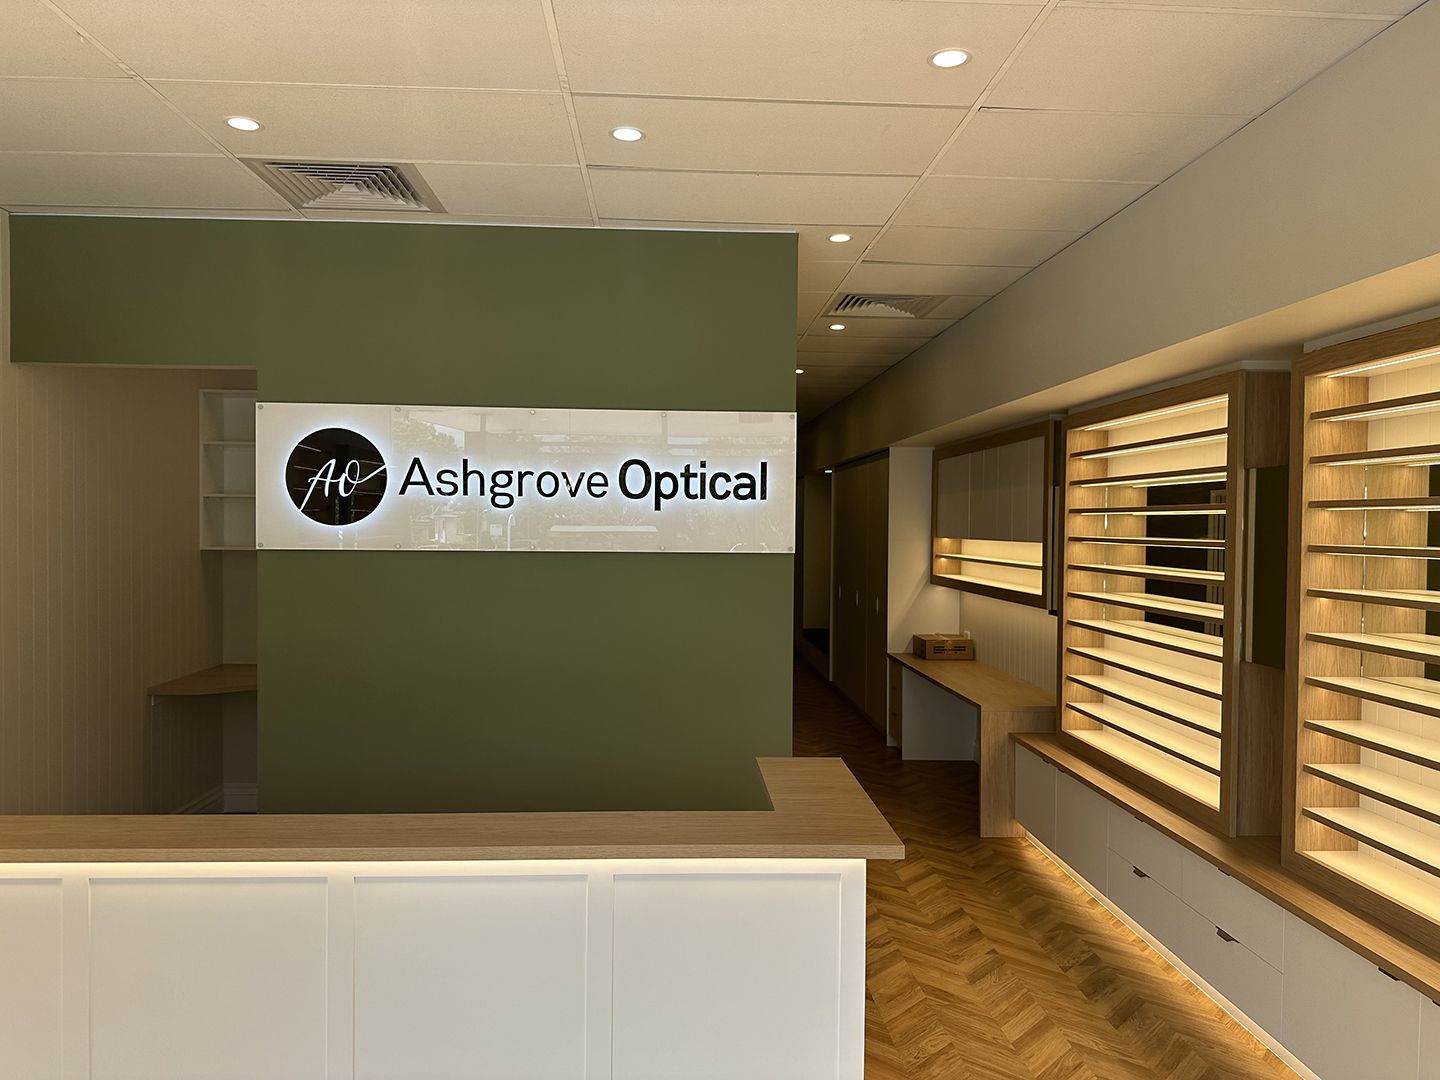 Ashgrove Optical 3D Printed Halo Illuminated Sign